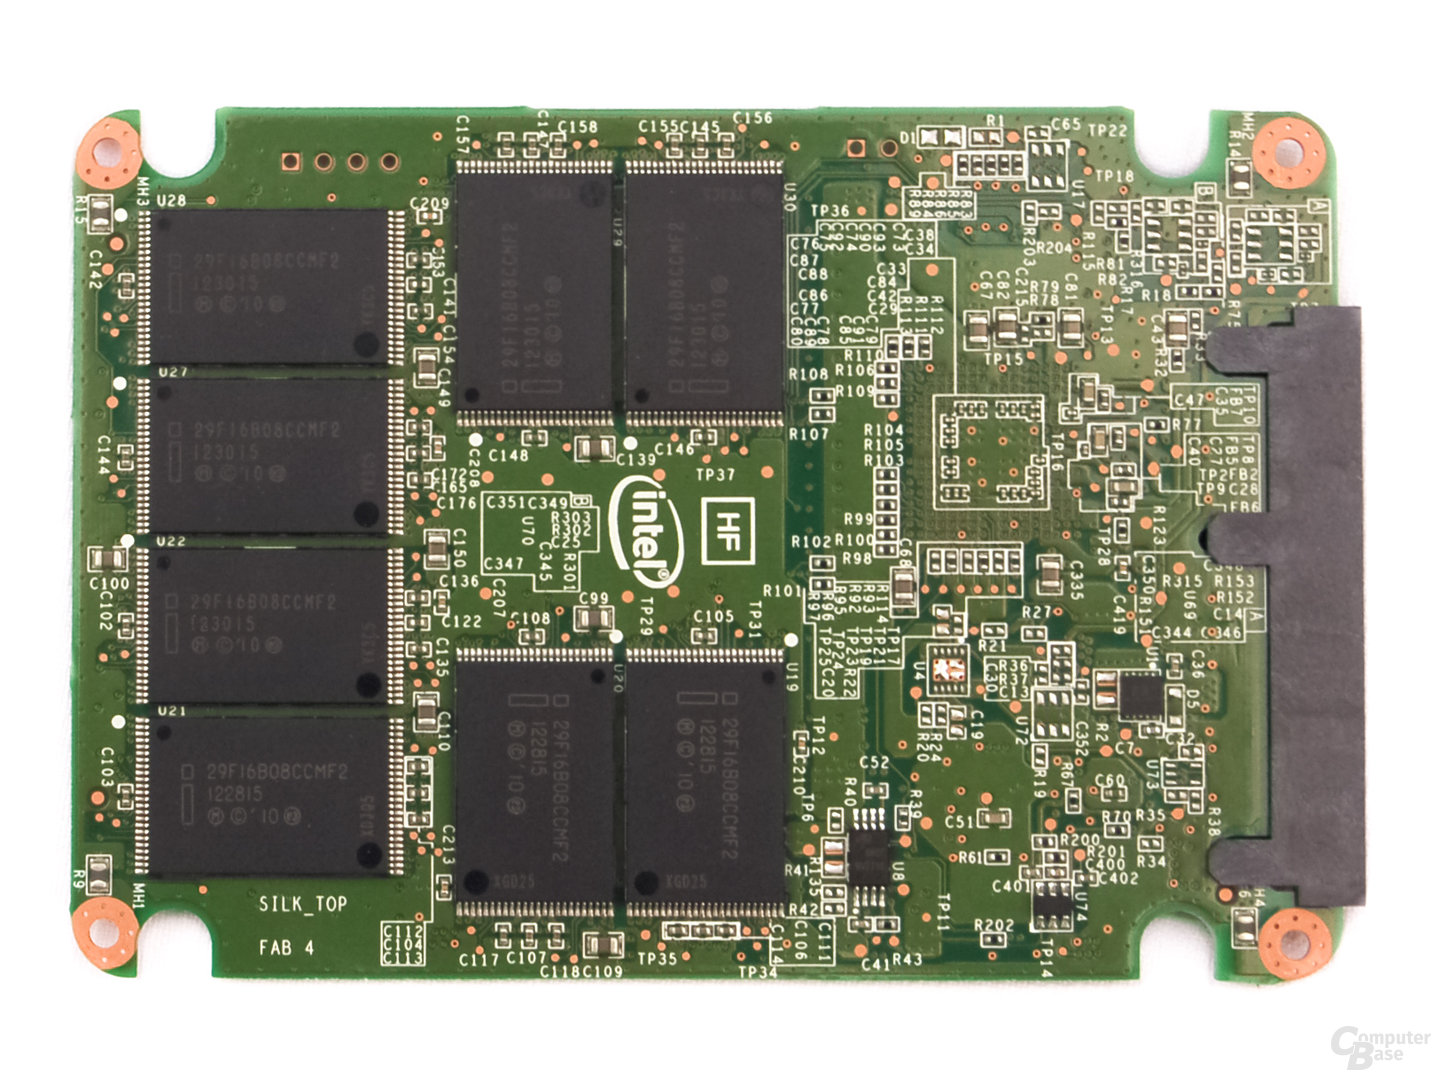 Intel SSD 335 Serie